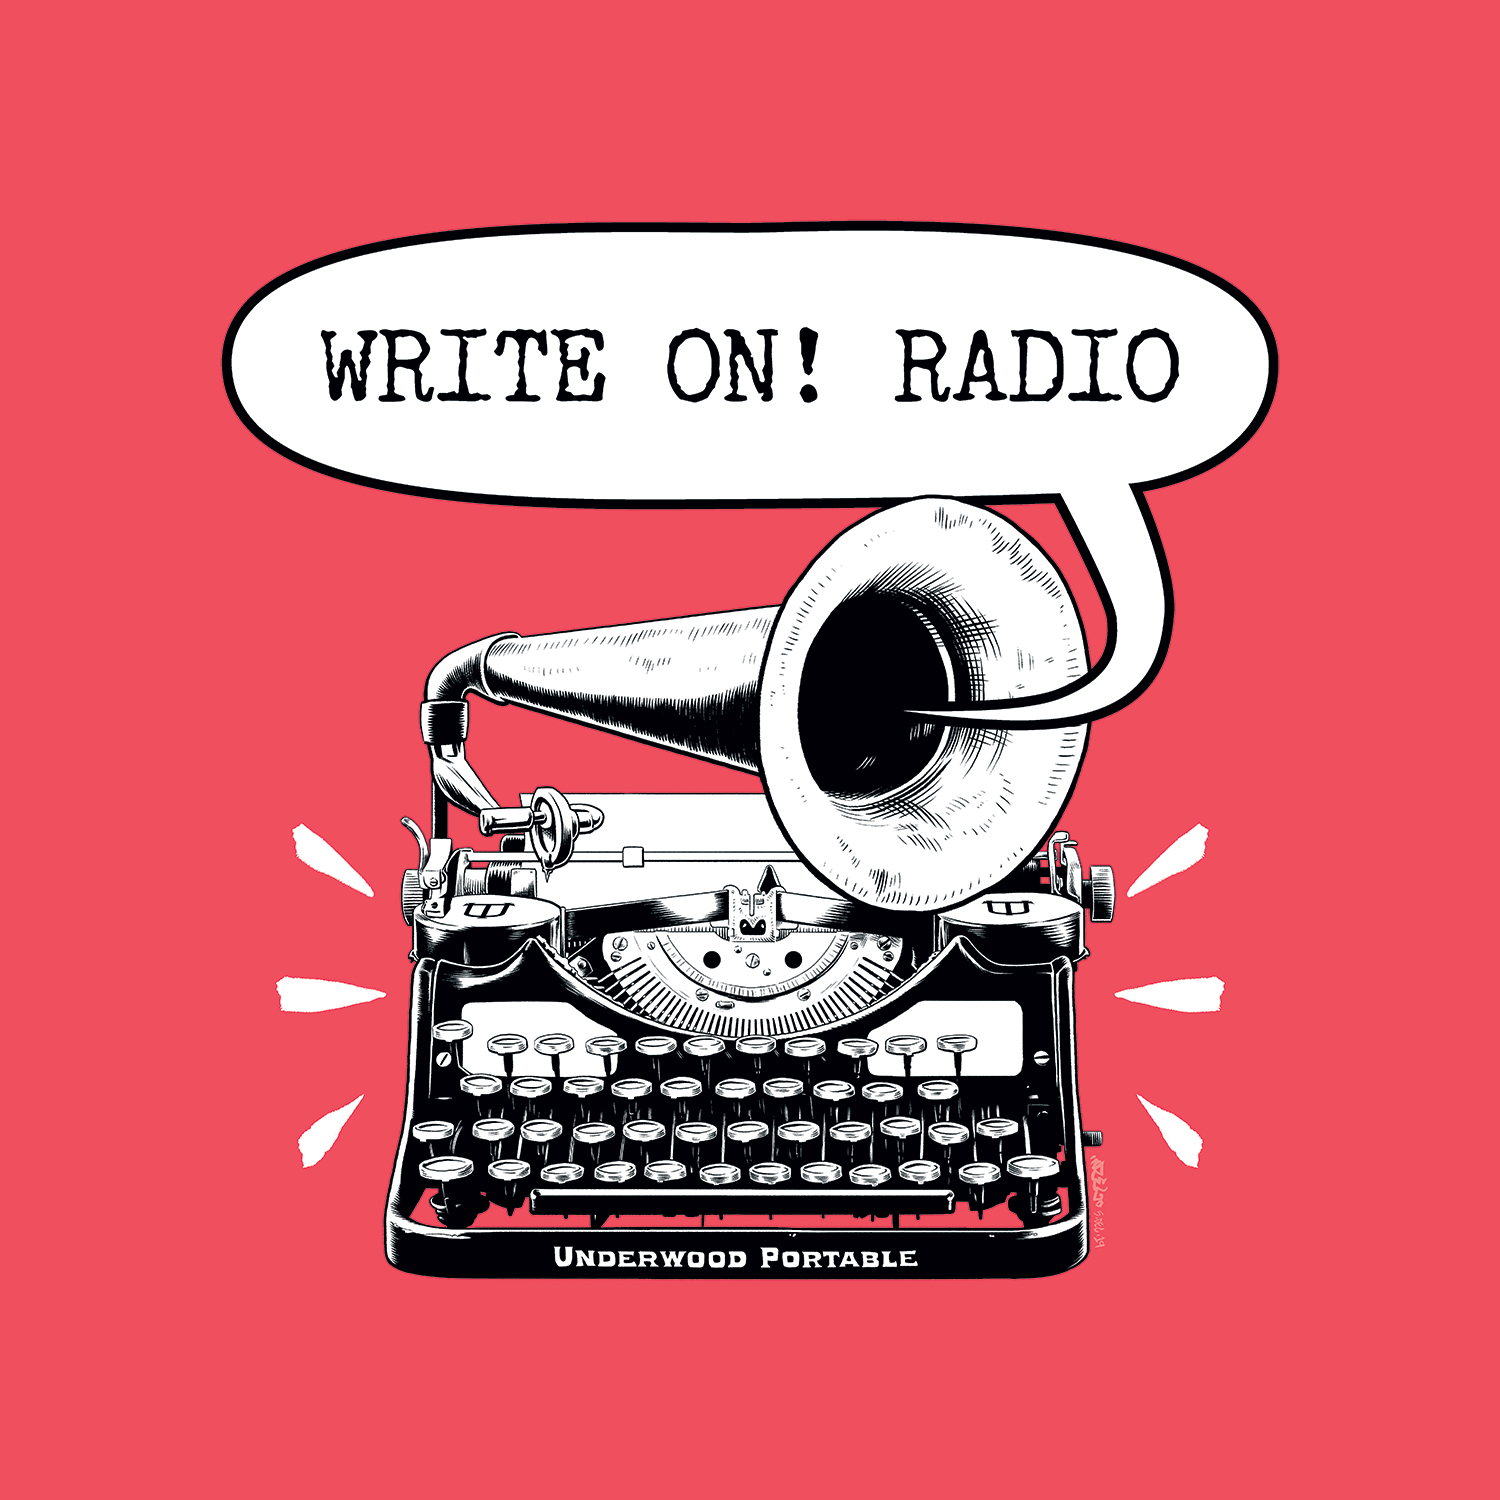 Write On! Radio - Bill Meissner + J. Bradford DeLong